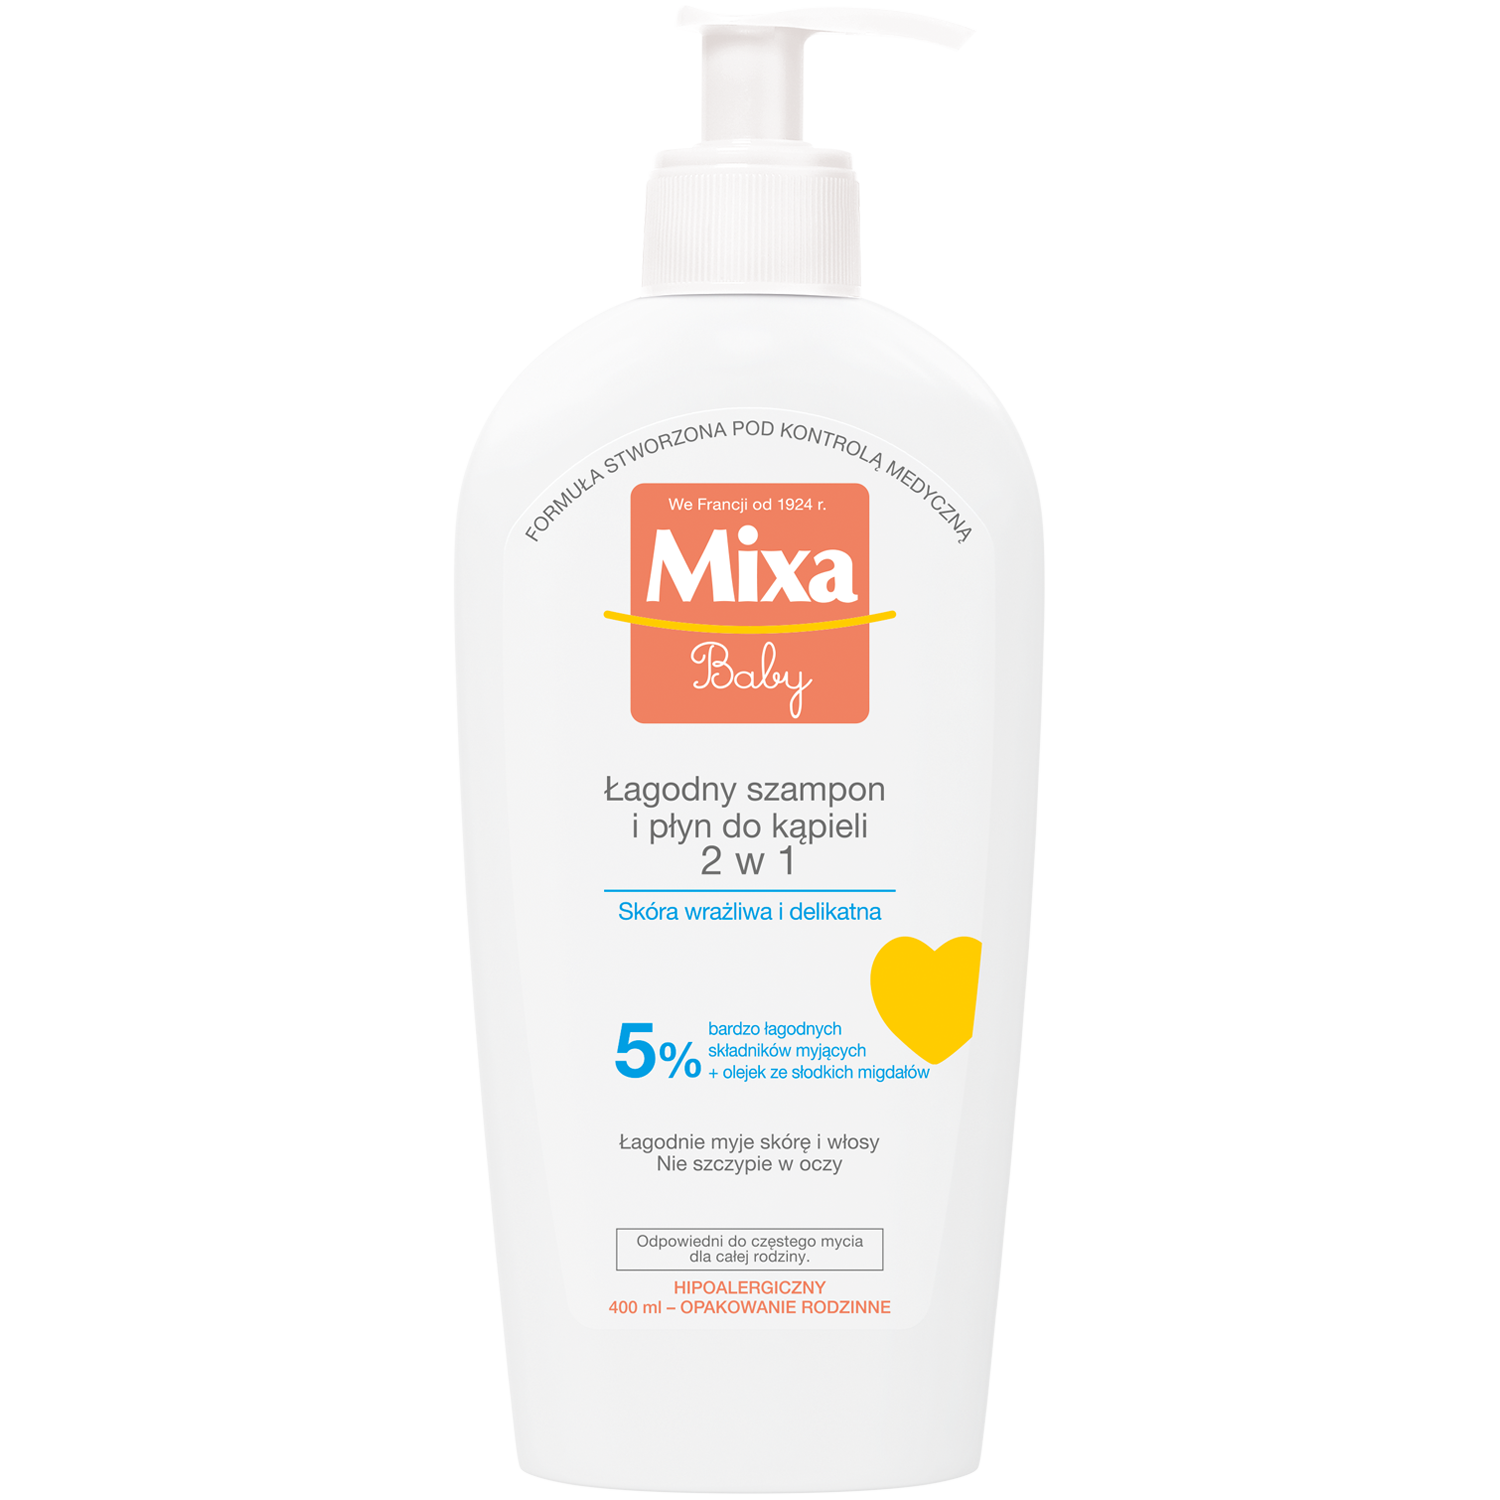 mixa szampon